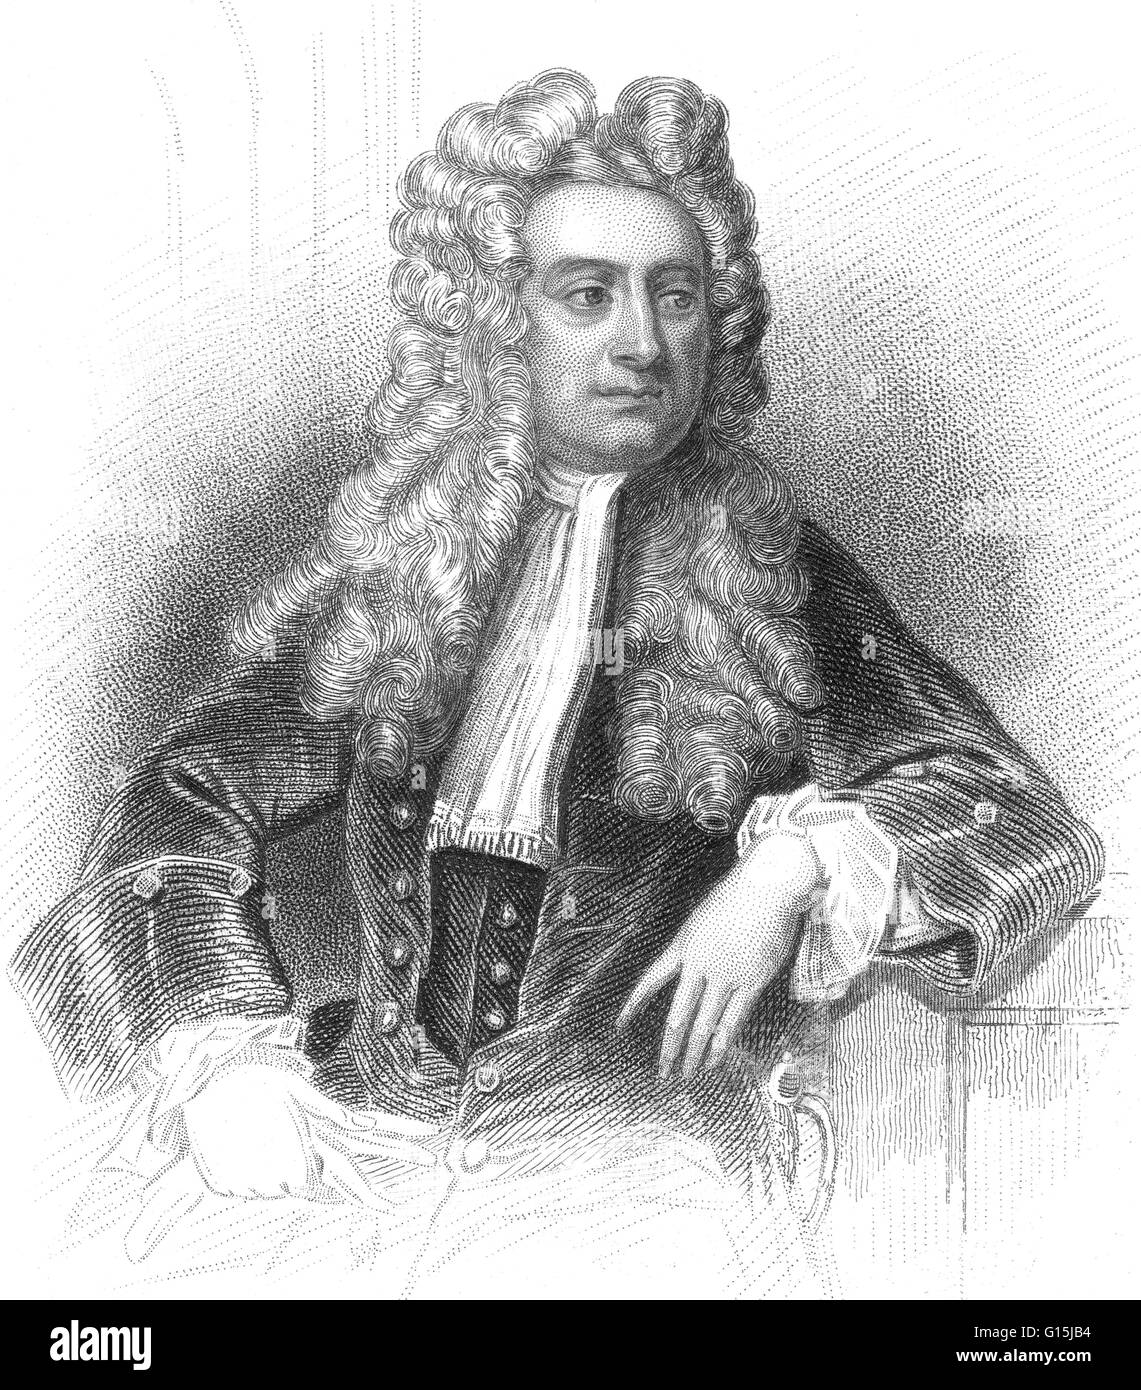 Сэр Исаак Ньютон (1642-1727)